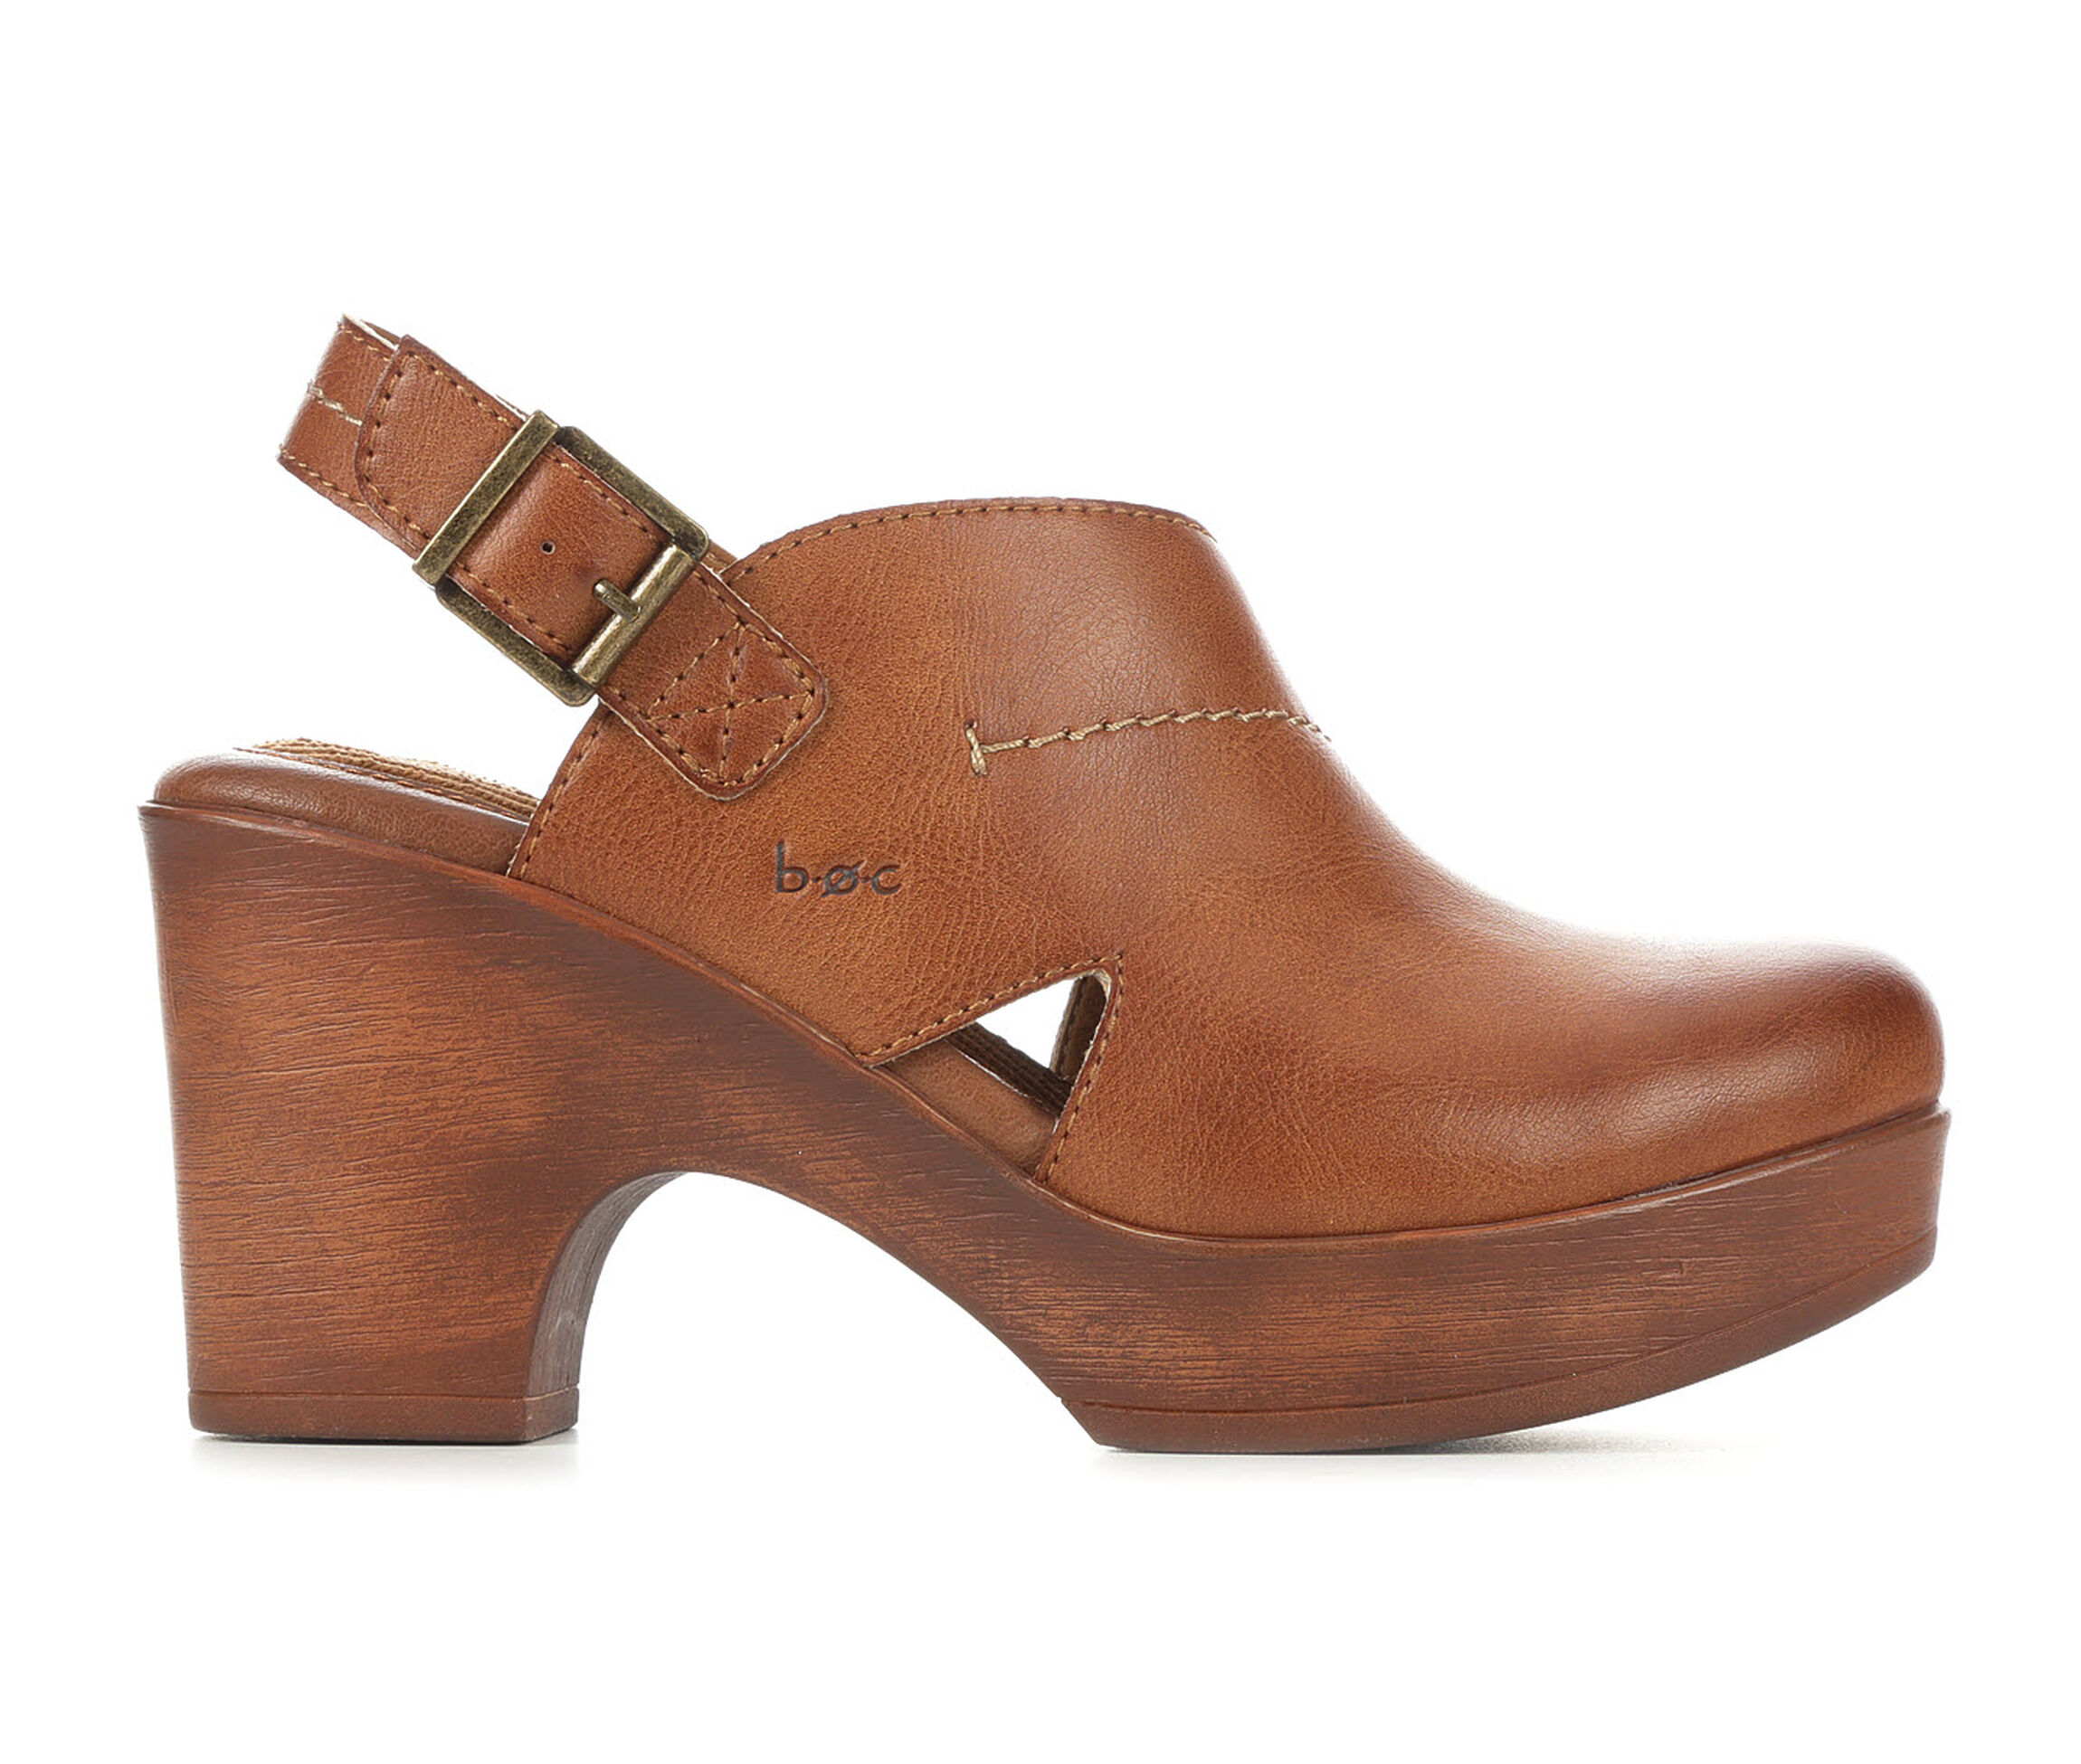 Custom Made Clogs Shoes Womens Shoes Clogs & Mules Slip-on Clogs| Clogs| women clogs custom designs| clogs women| Free Shipping| women Clogs| Stylish women Clogs 